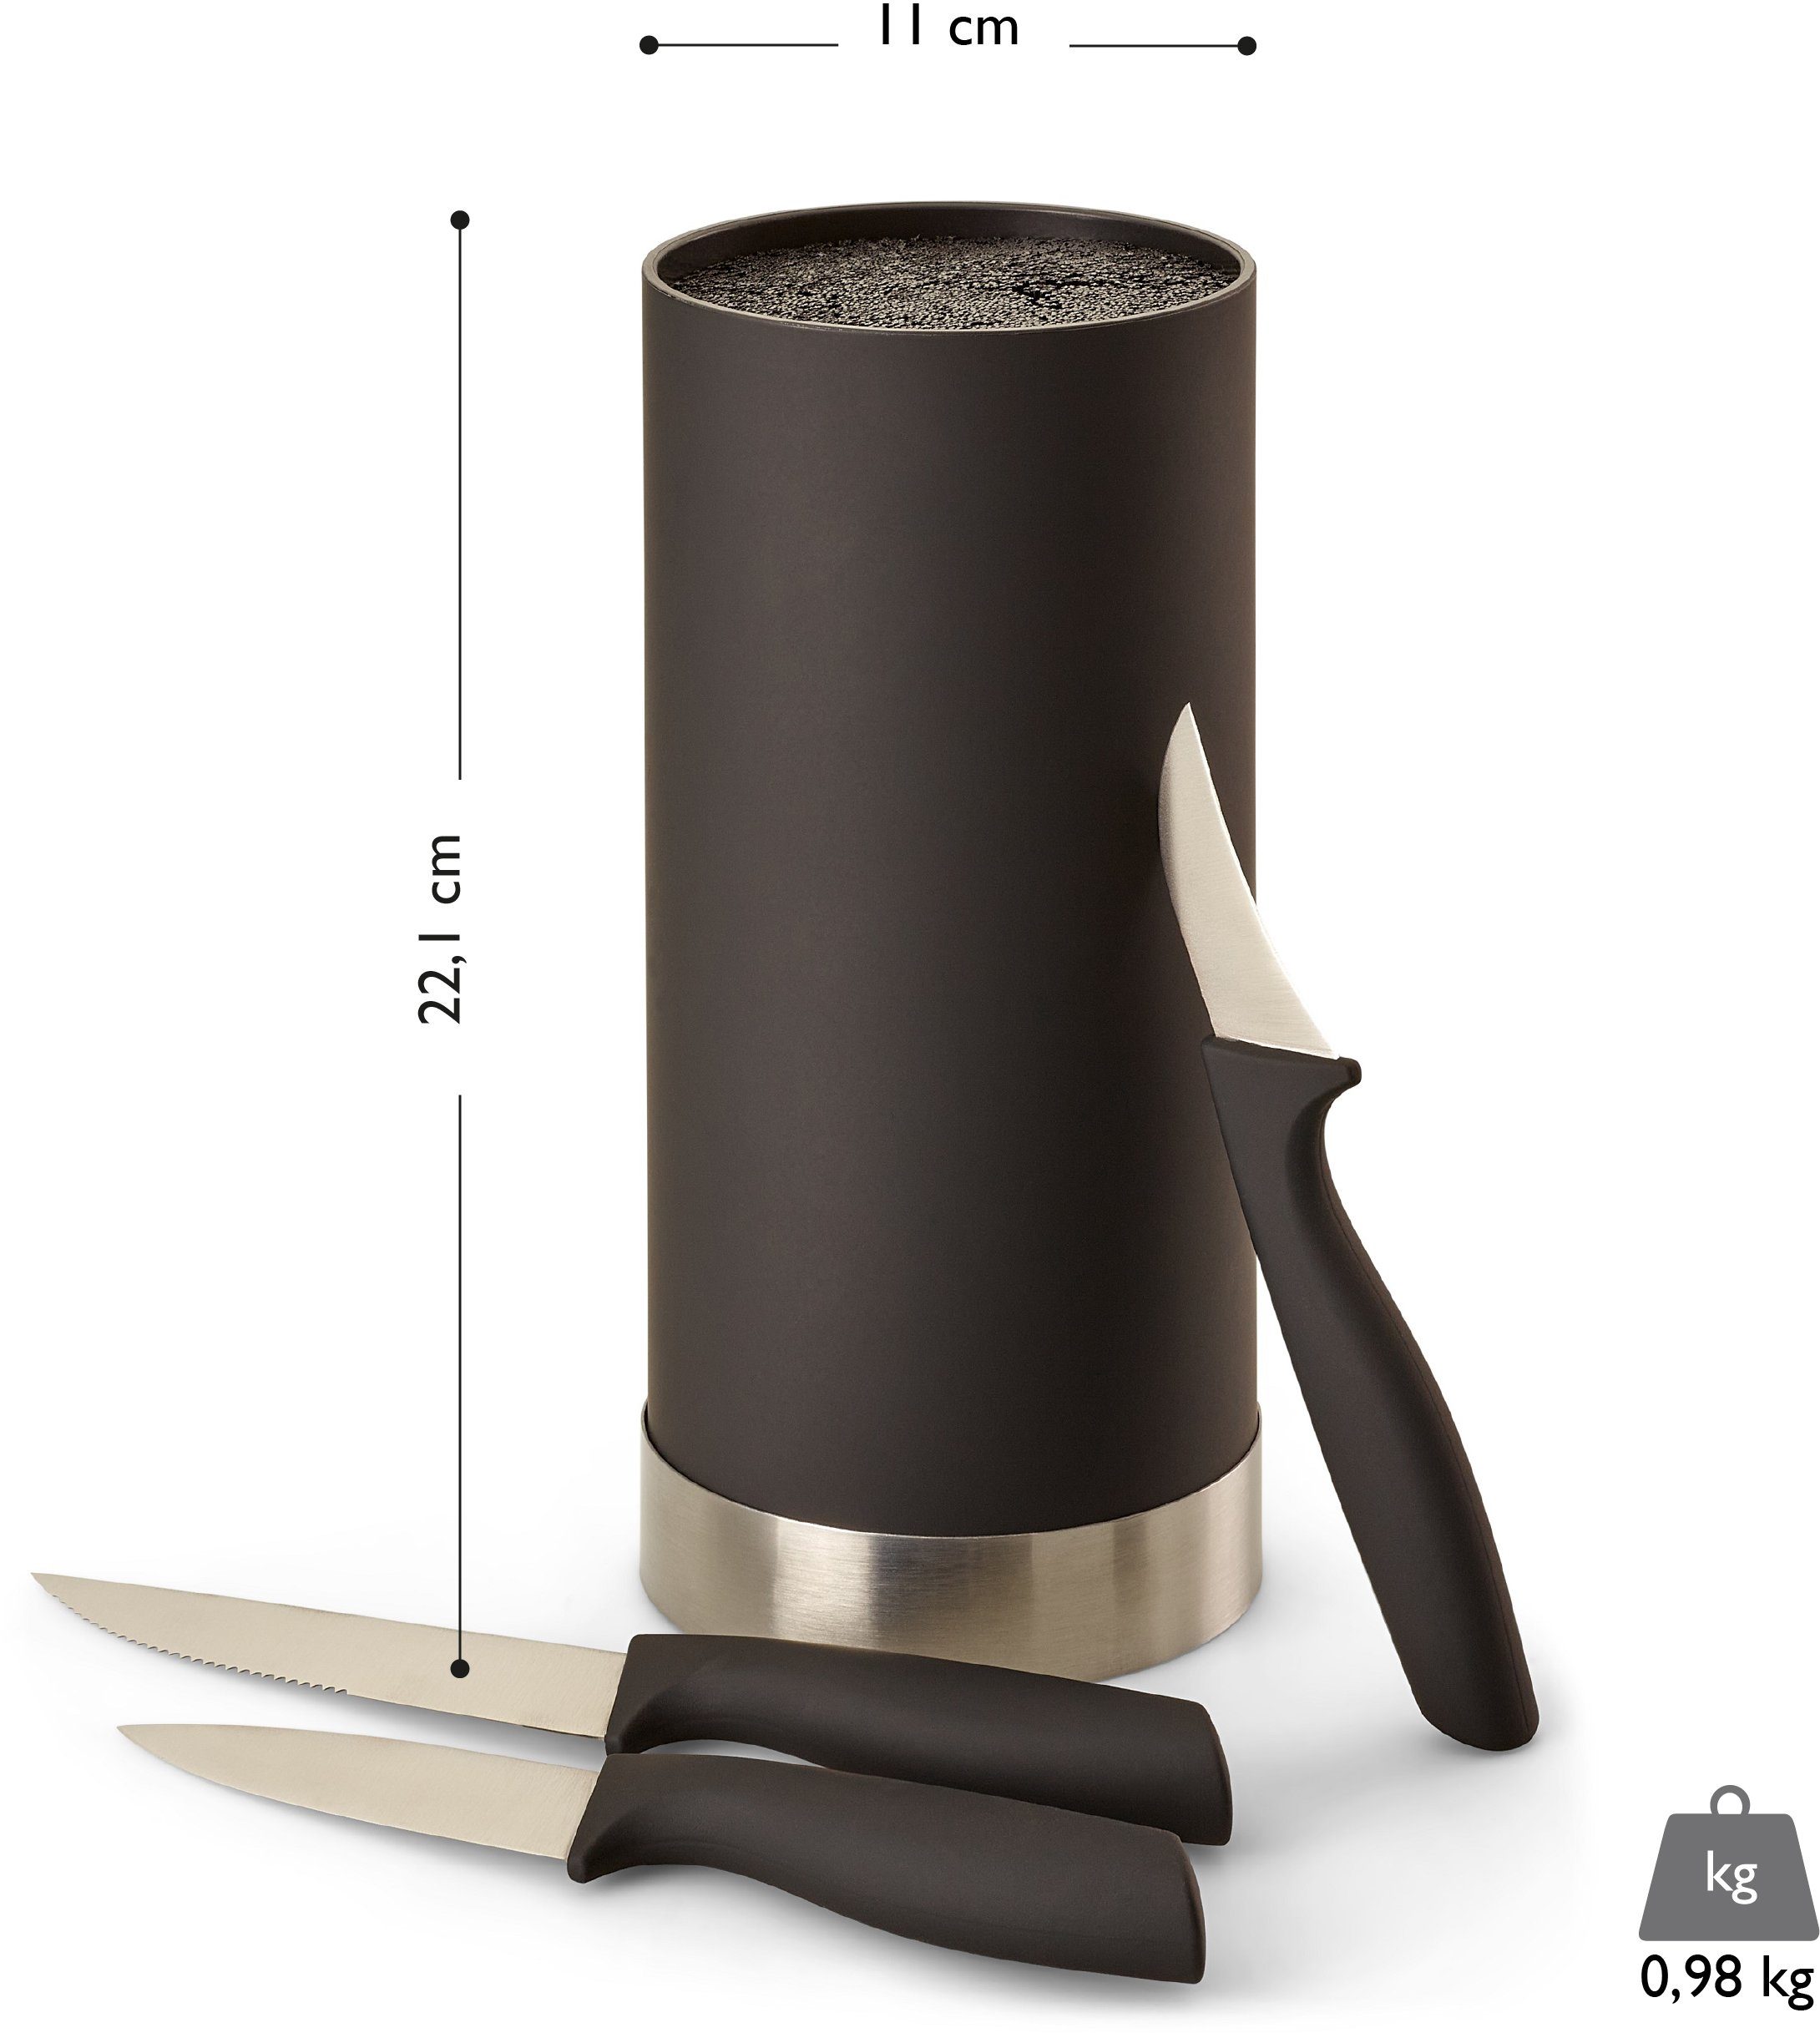 Kochmessern cm 11 Messerblock, 3 cm, schwarz/silberfarben Borsteneinsatz x mit Set Messer inkl. ECHTWERK 4tlg 22